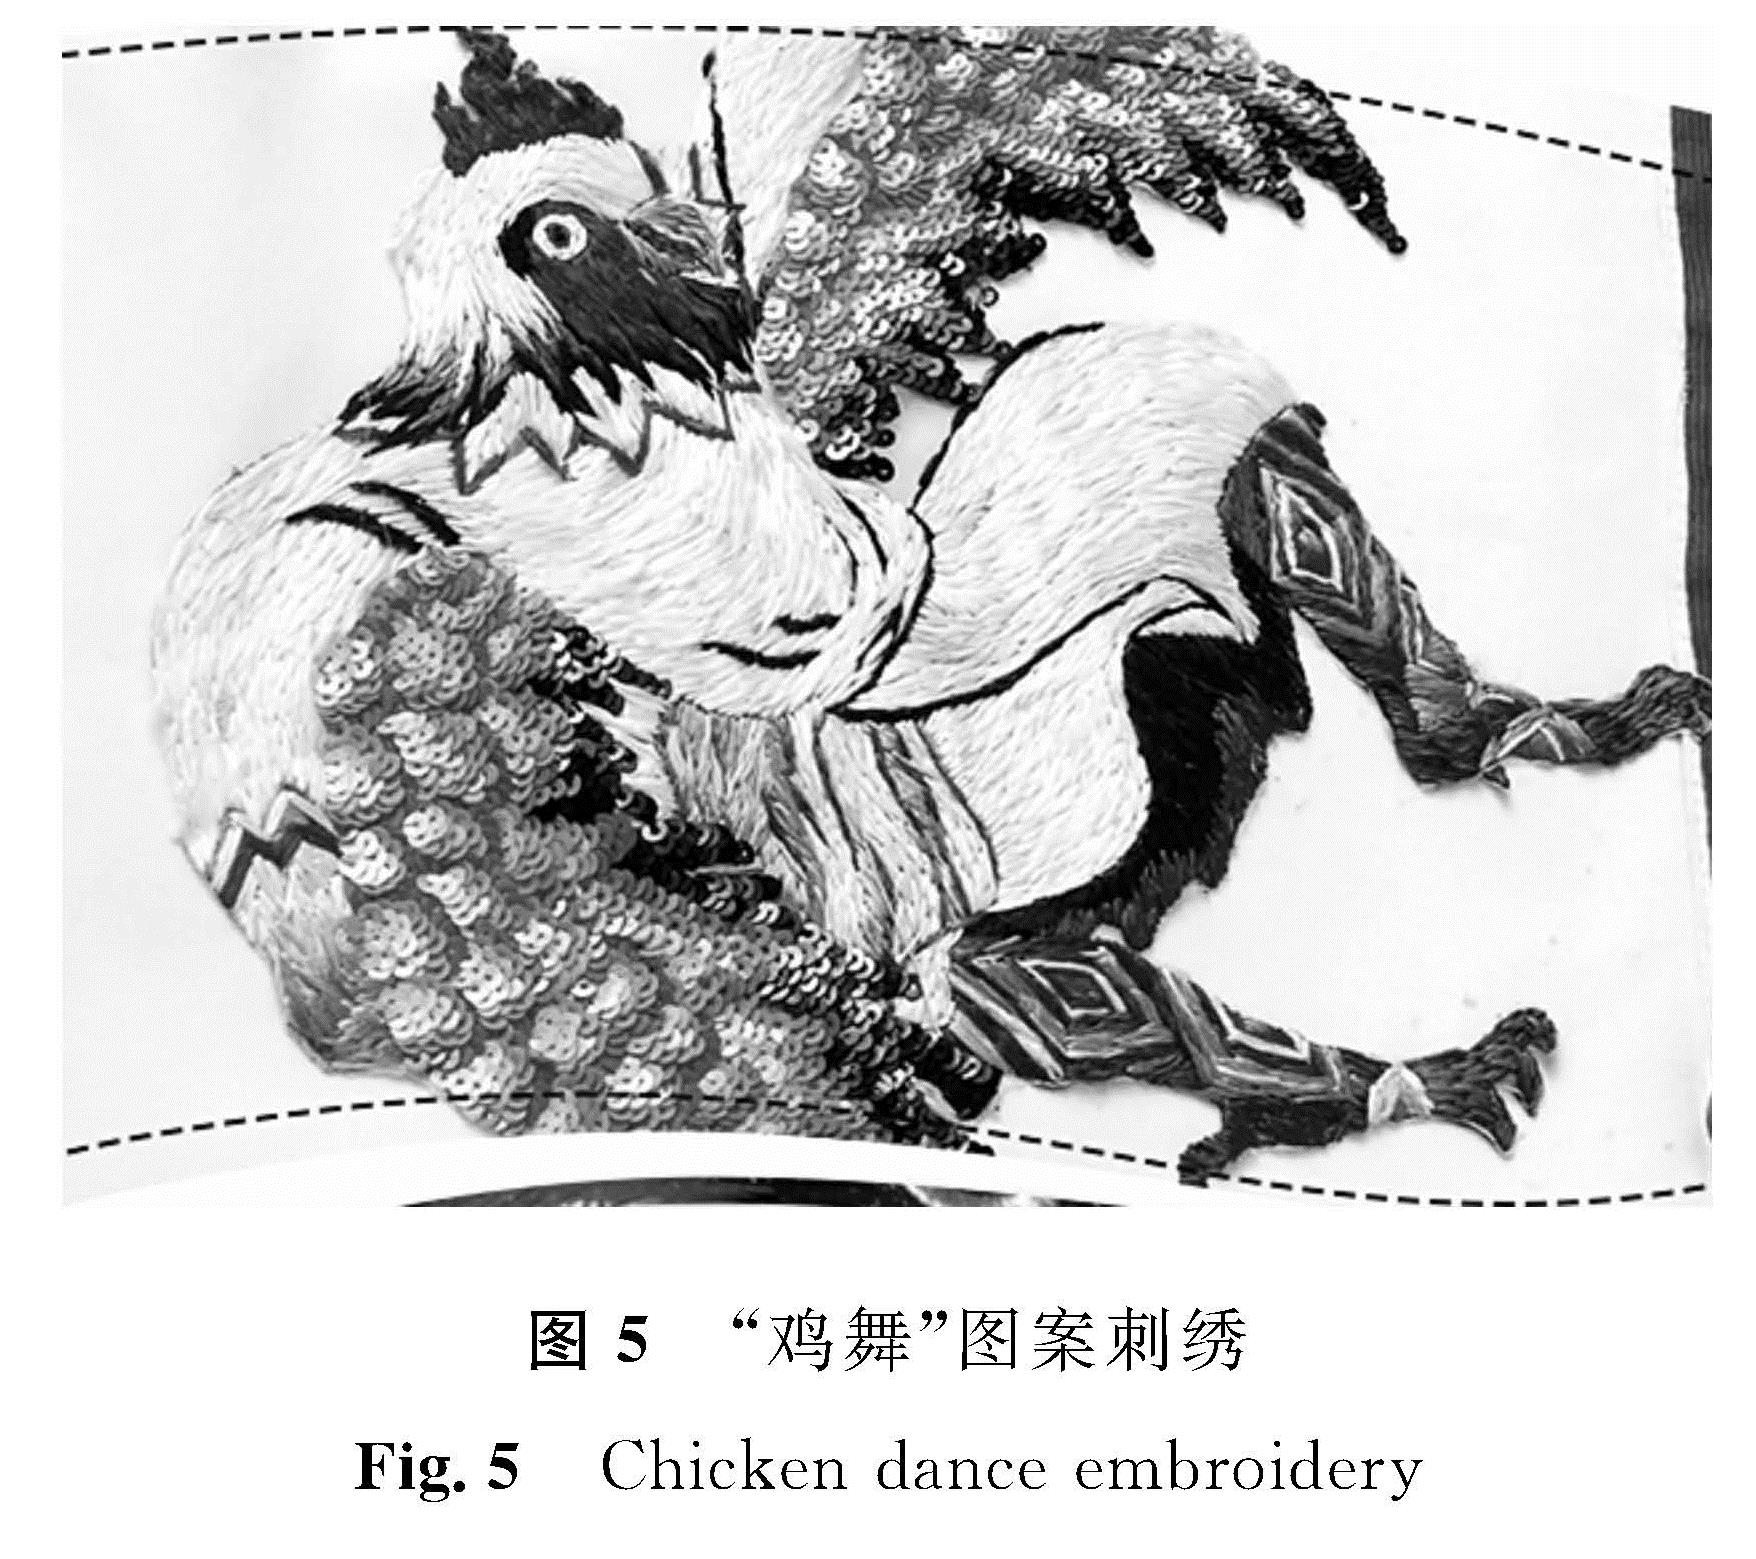 图5 “鸡舞”图案刺绣<br/>Fig.5 Chicken dance embroidery